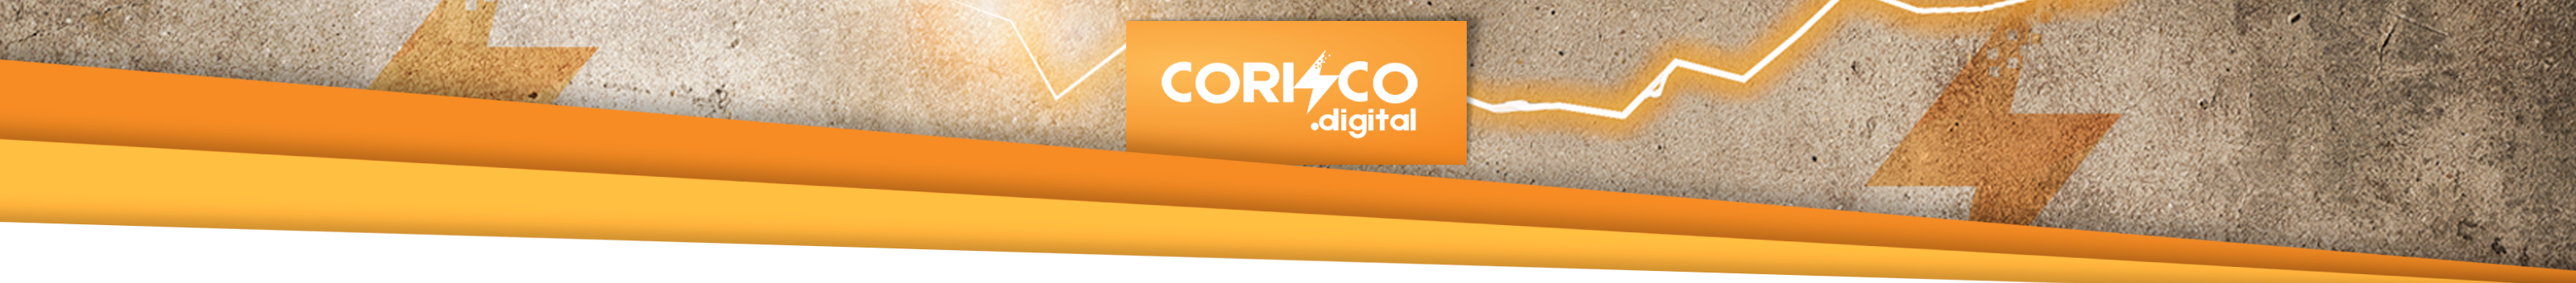 Corisco Digital's profile banner